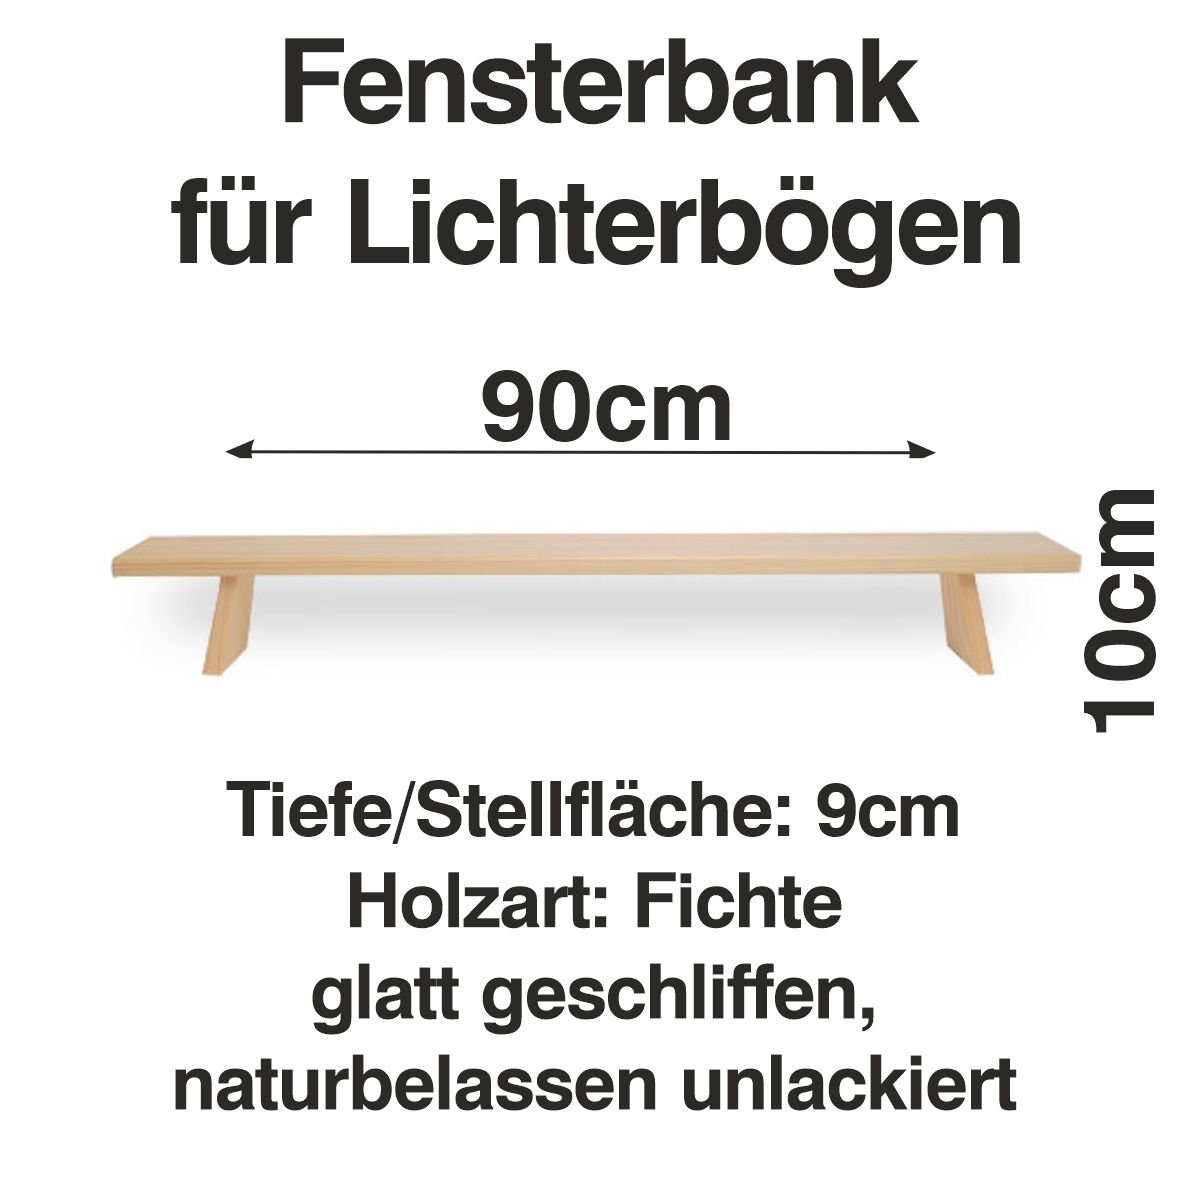 Schenk Holzkunst cm Erhöhung Lichterbogen Schwibbogen-Fensterbank Fenst Schwibbogen 90 Bank